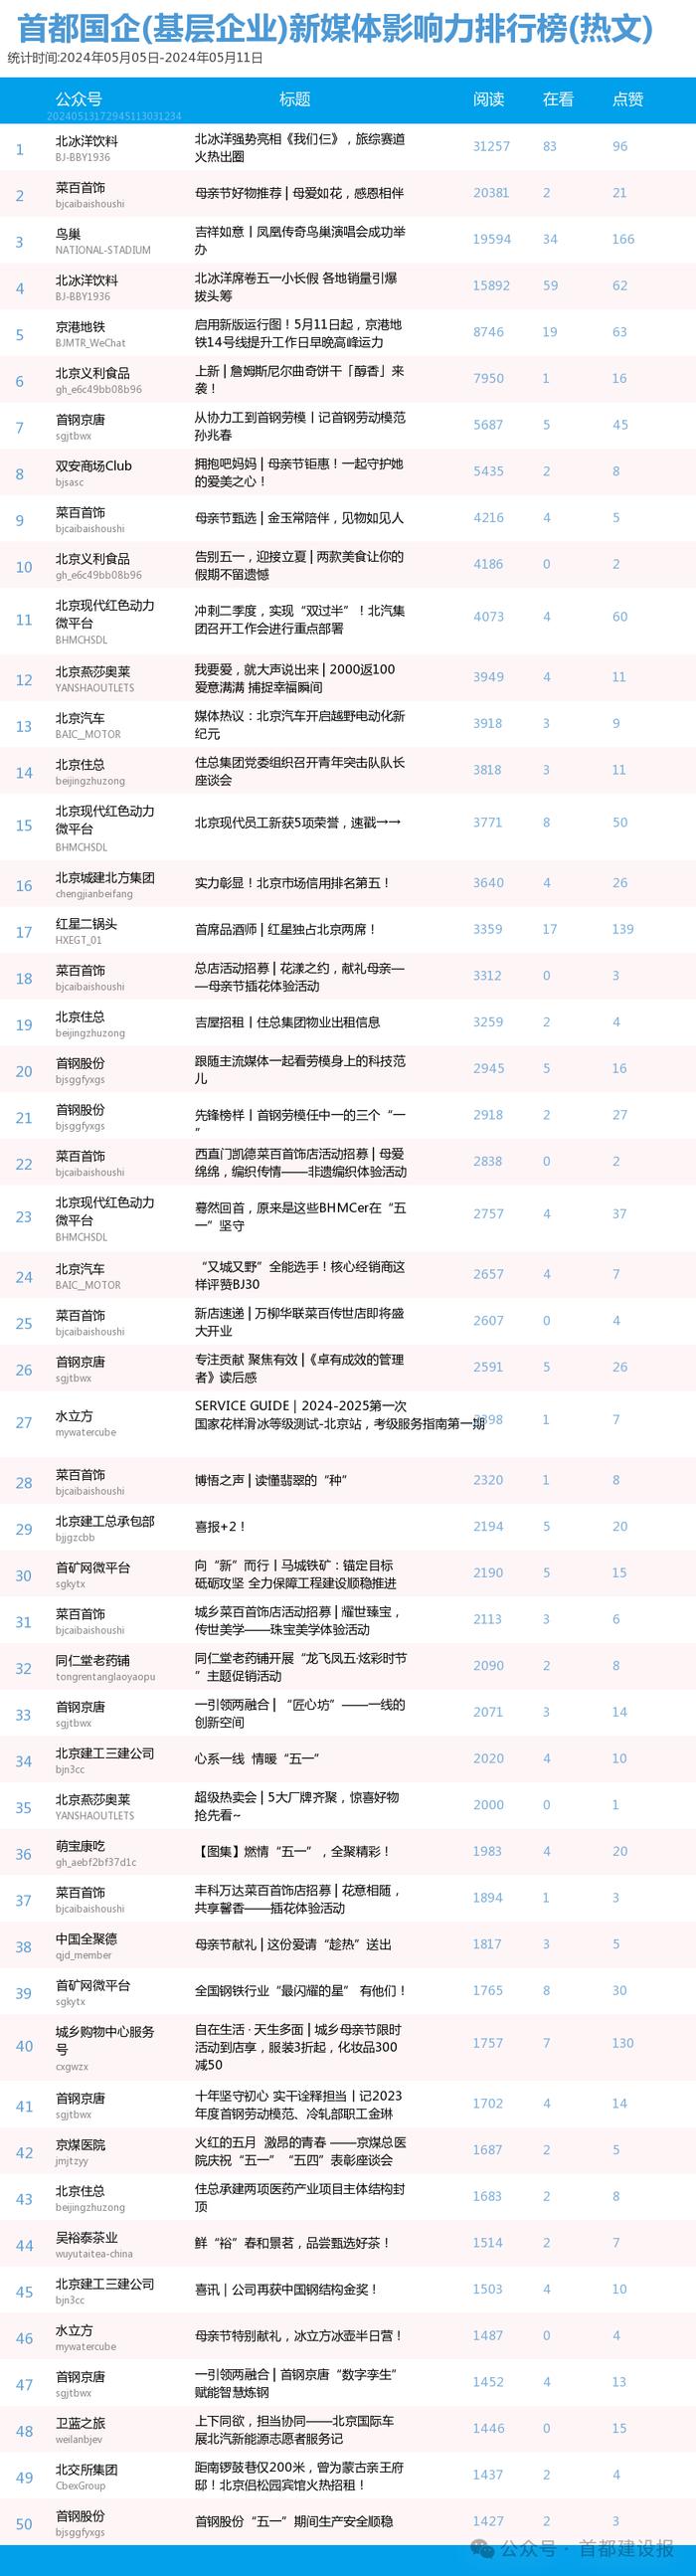 【北京国企新媒体影响力排行榜】5月周榜(5.5-5.11)第407期